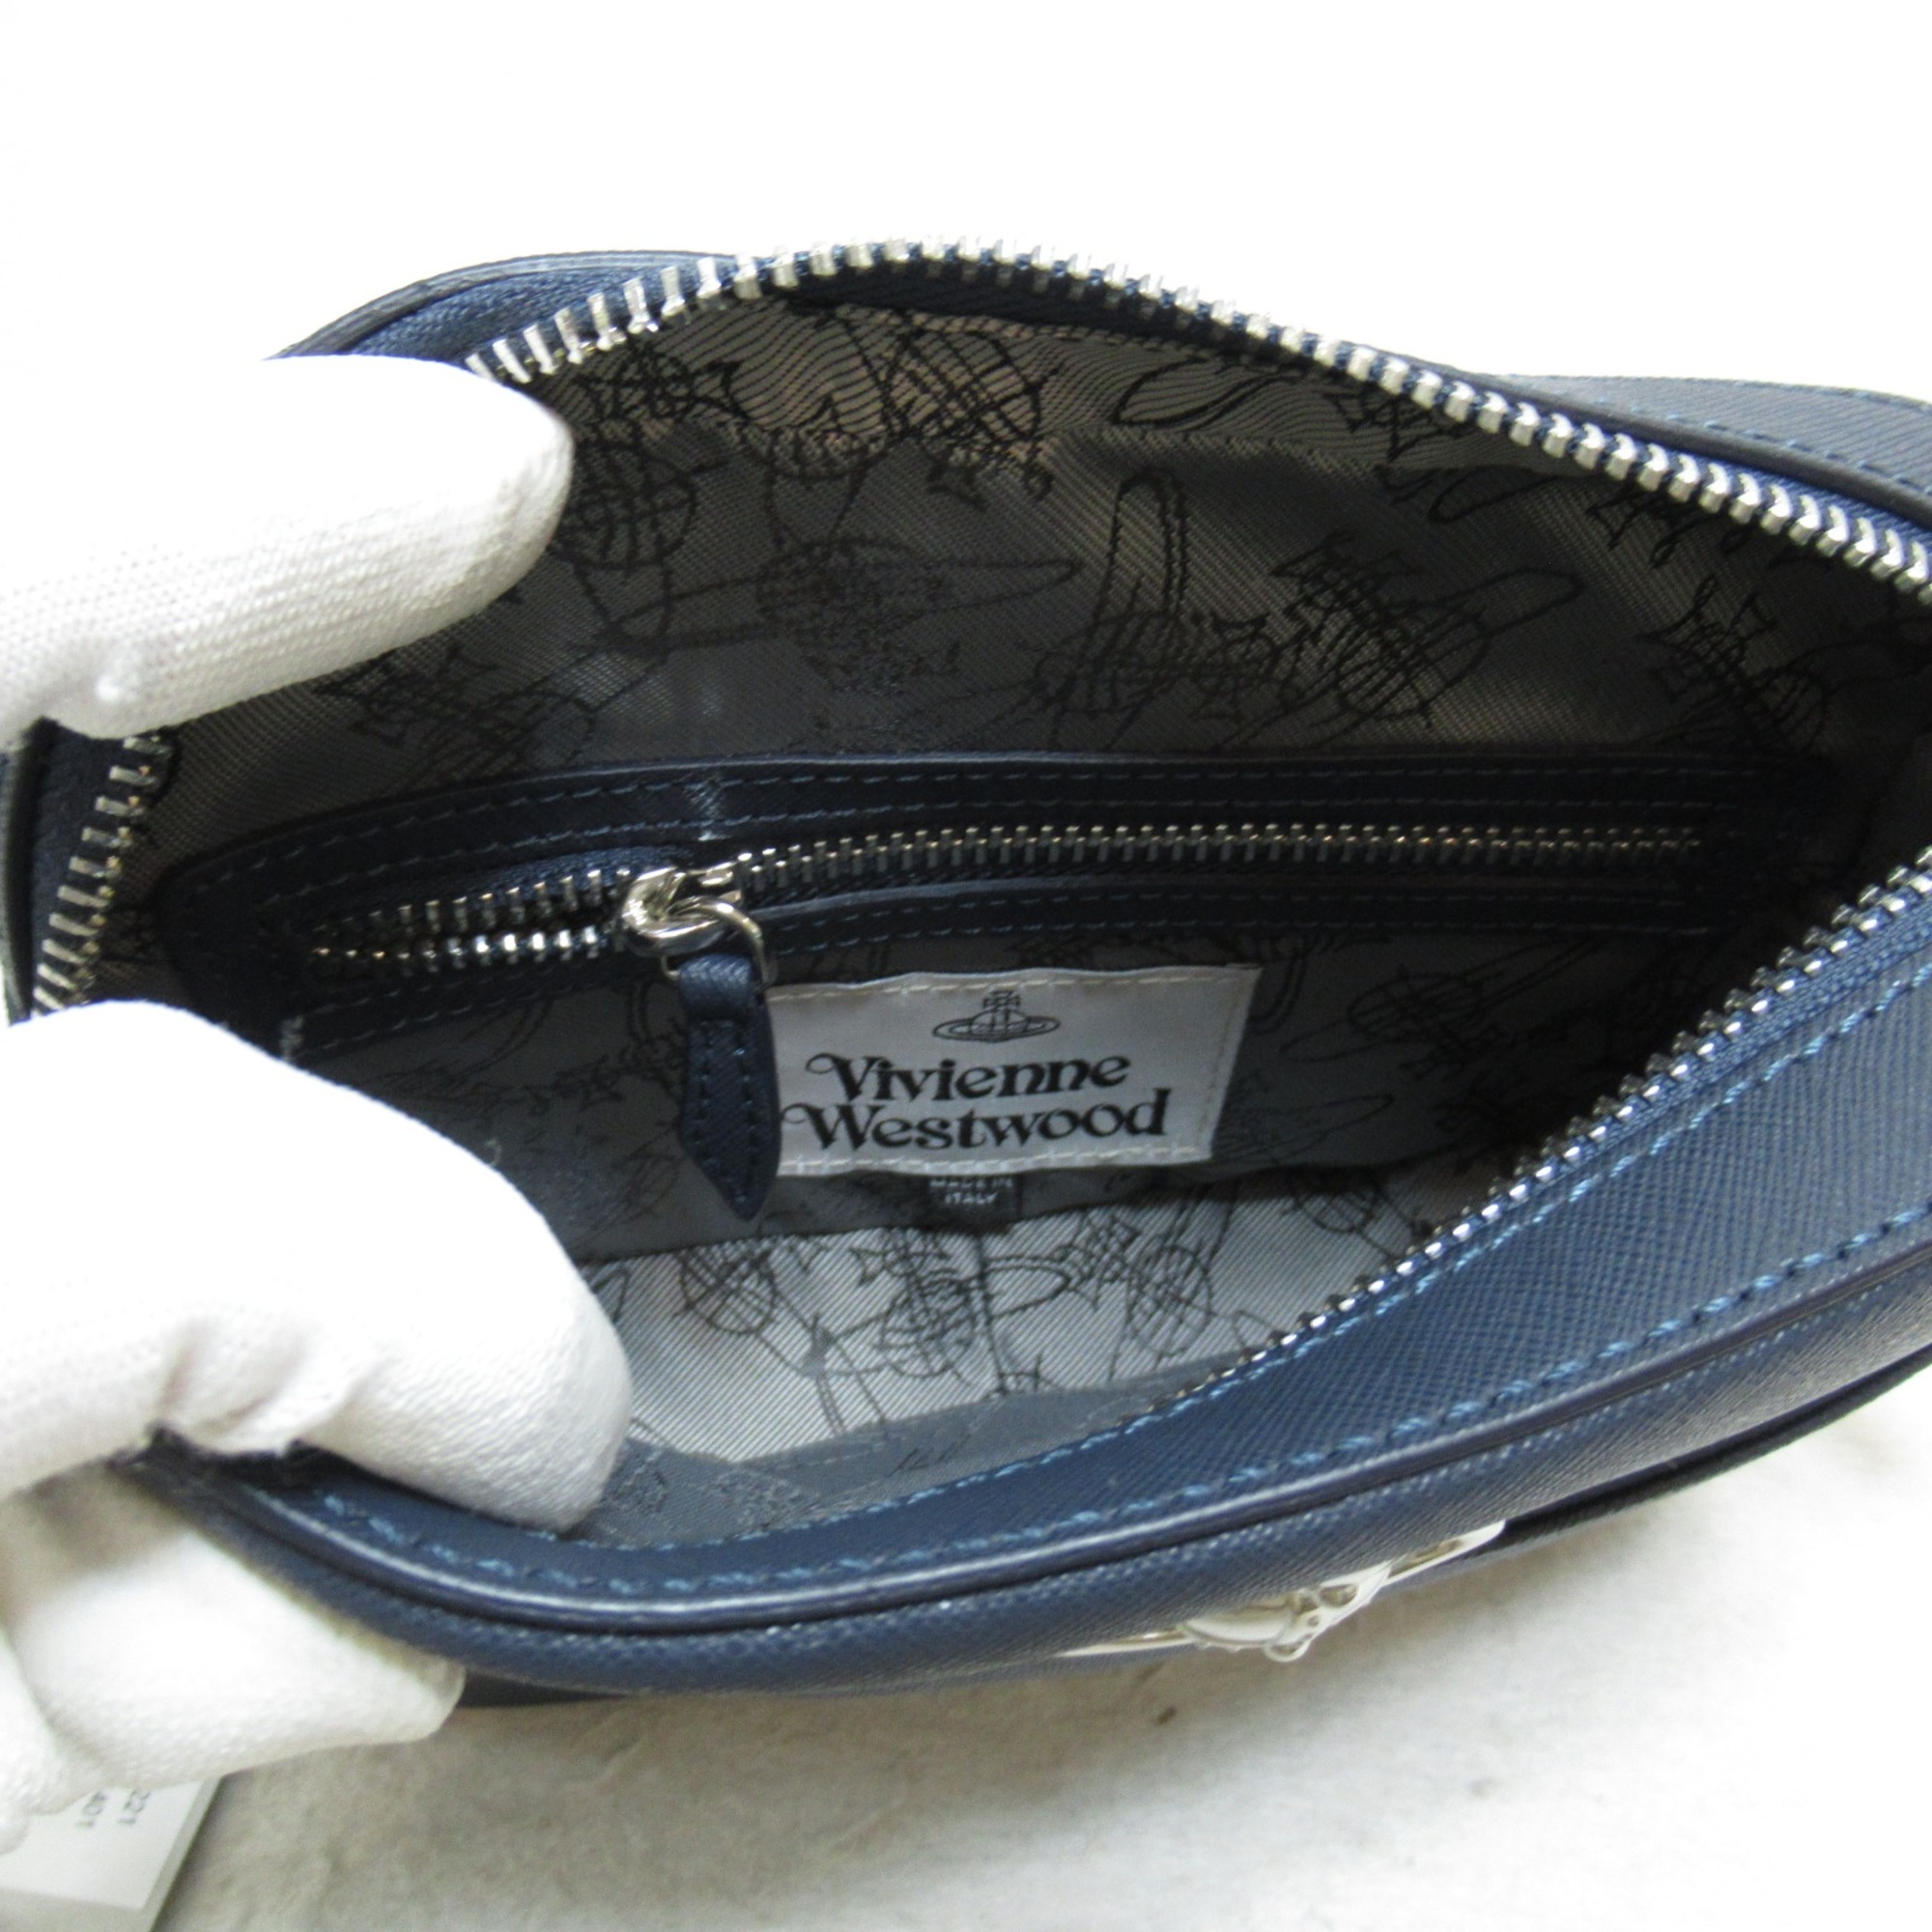 Vivienne Westwood Camera bag Shoulder Bag Navy leather 4303006441214K401